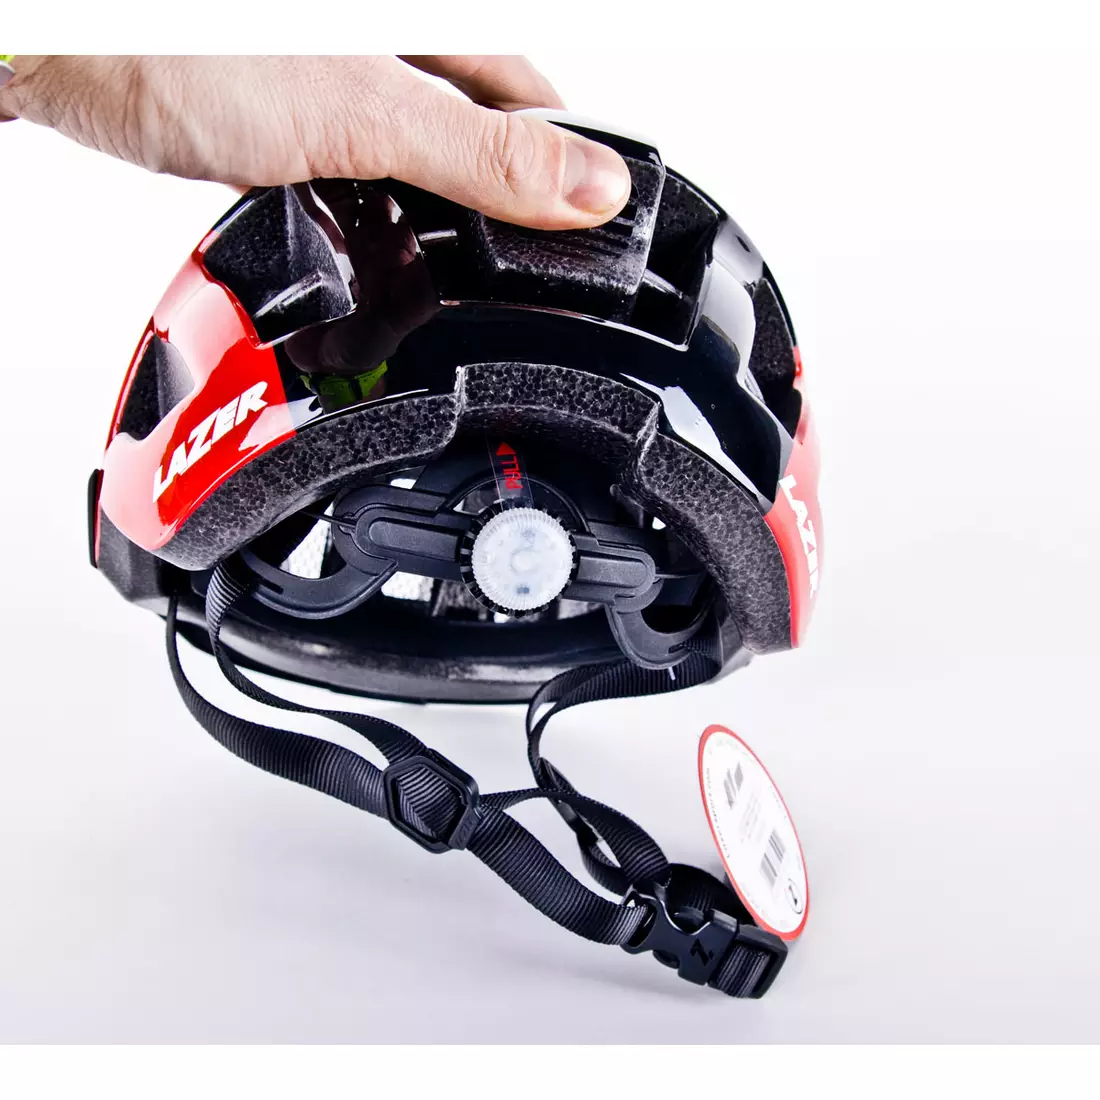 LAZER Compact DLX cască de bicicletă LED ecran de insecte roșu negru lucios